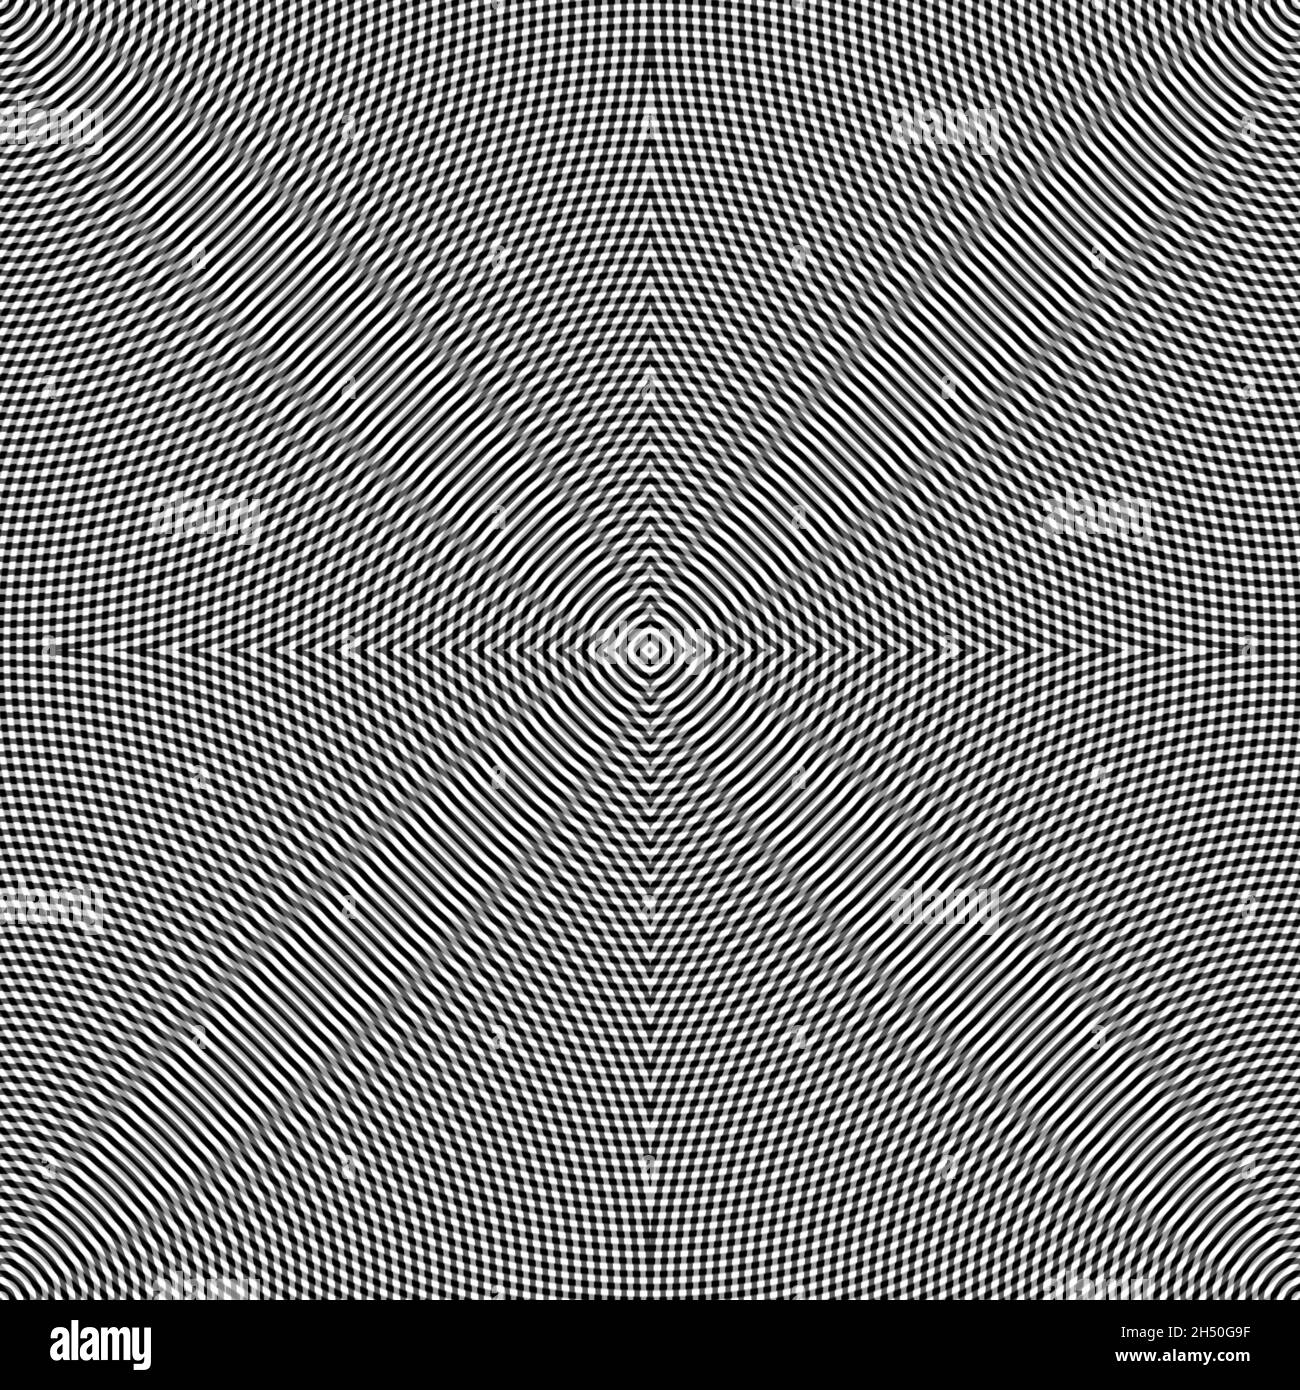 Lignes circulaires noires et blanches créant une illusion ondulée hypnotisante, une illustration abstraite Banque D'Images